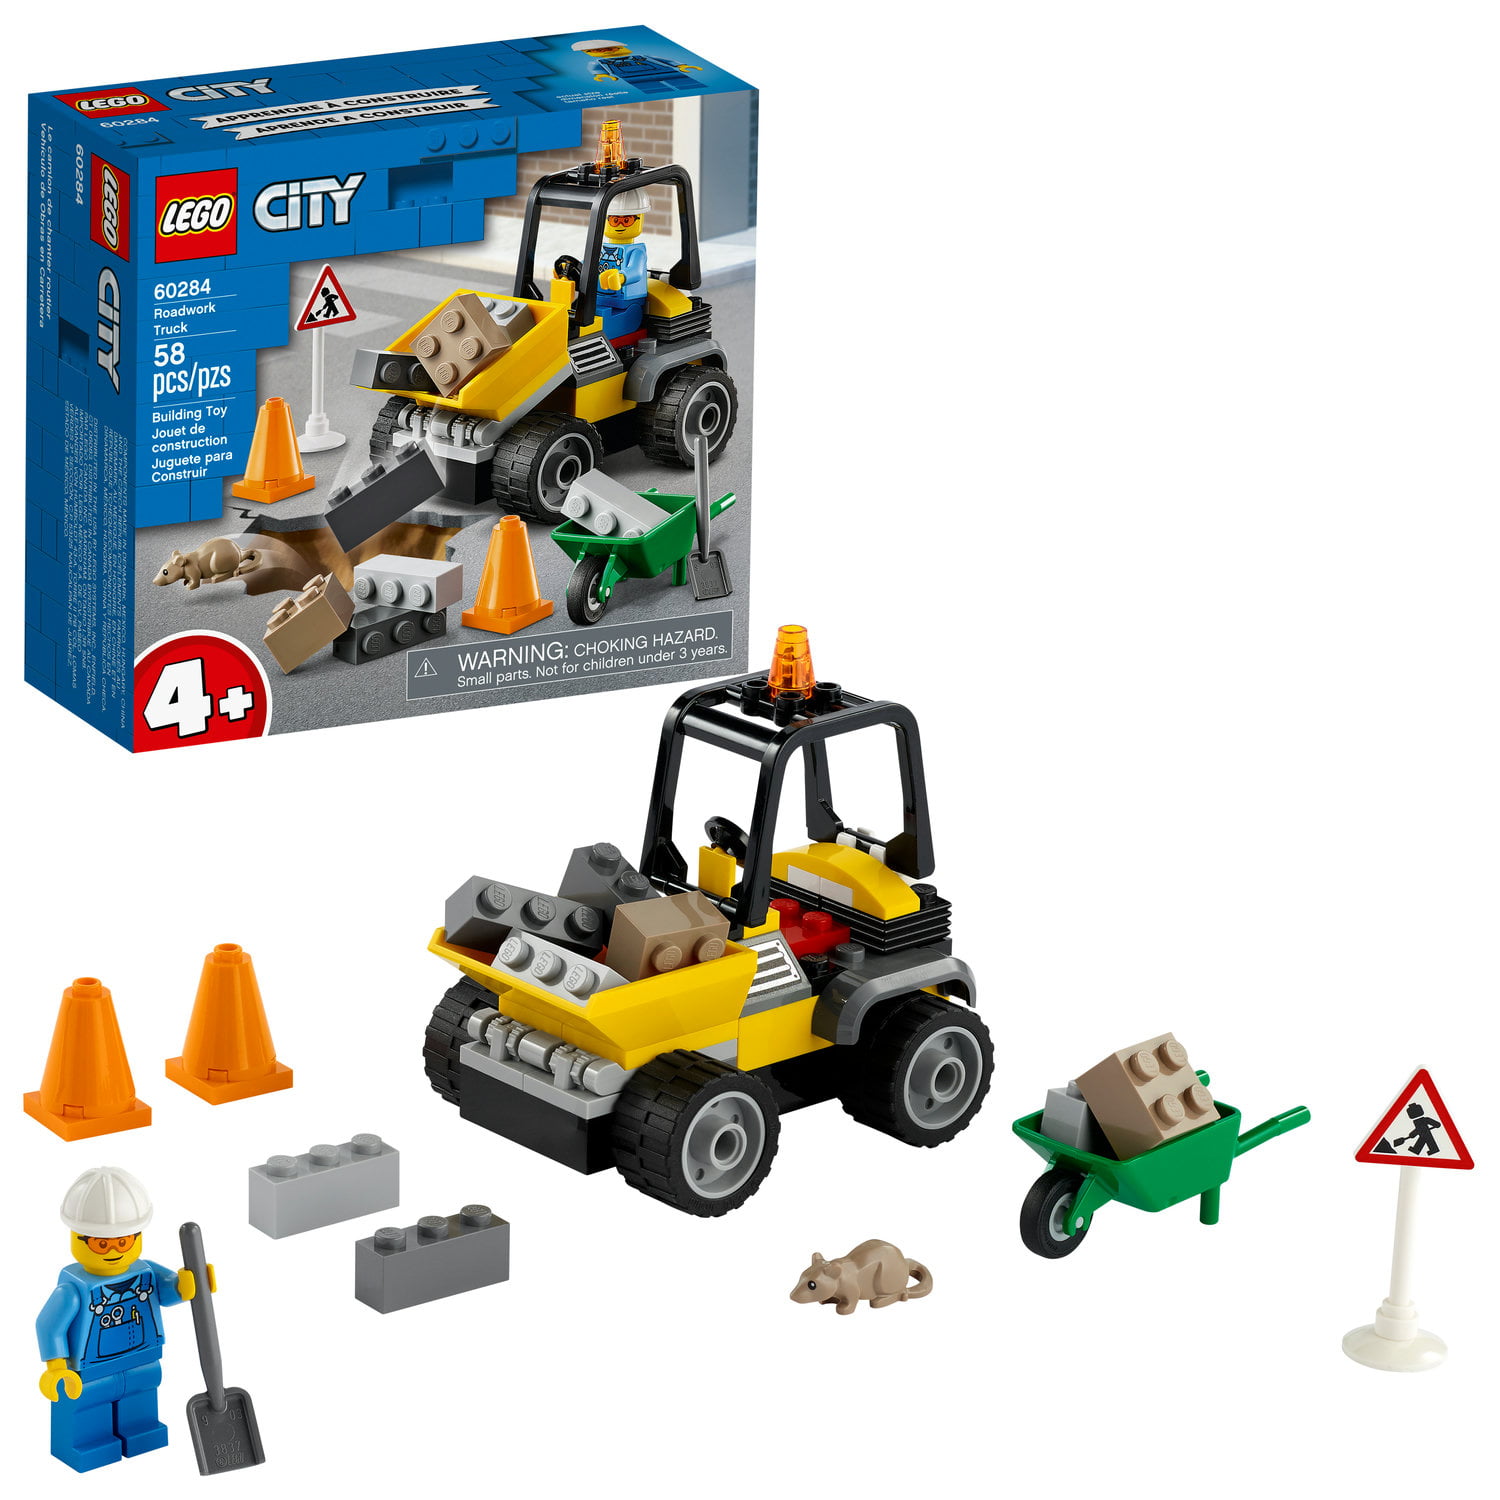 60252 Lego City Construction Bulldozer Building Set 